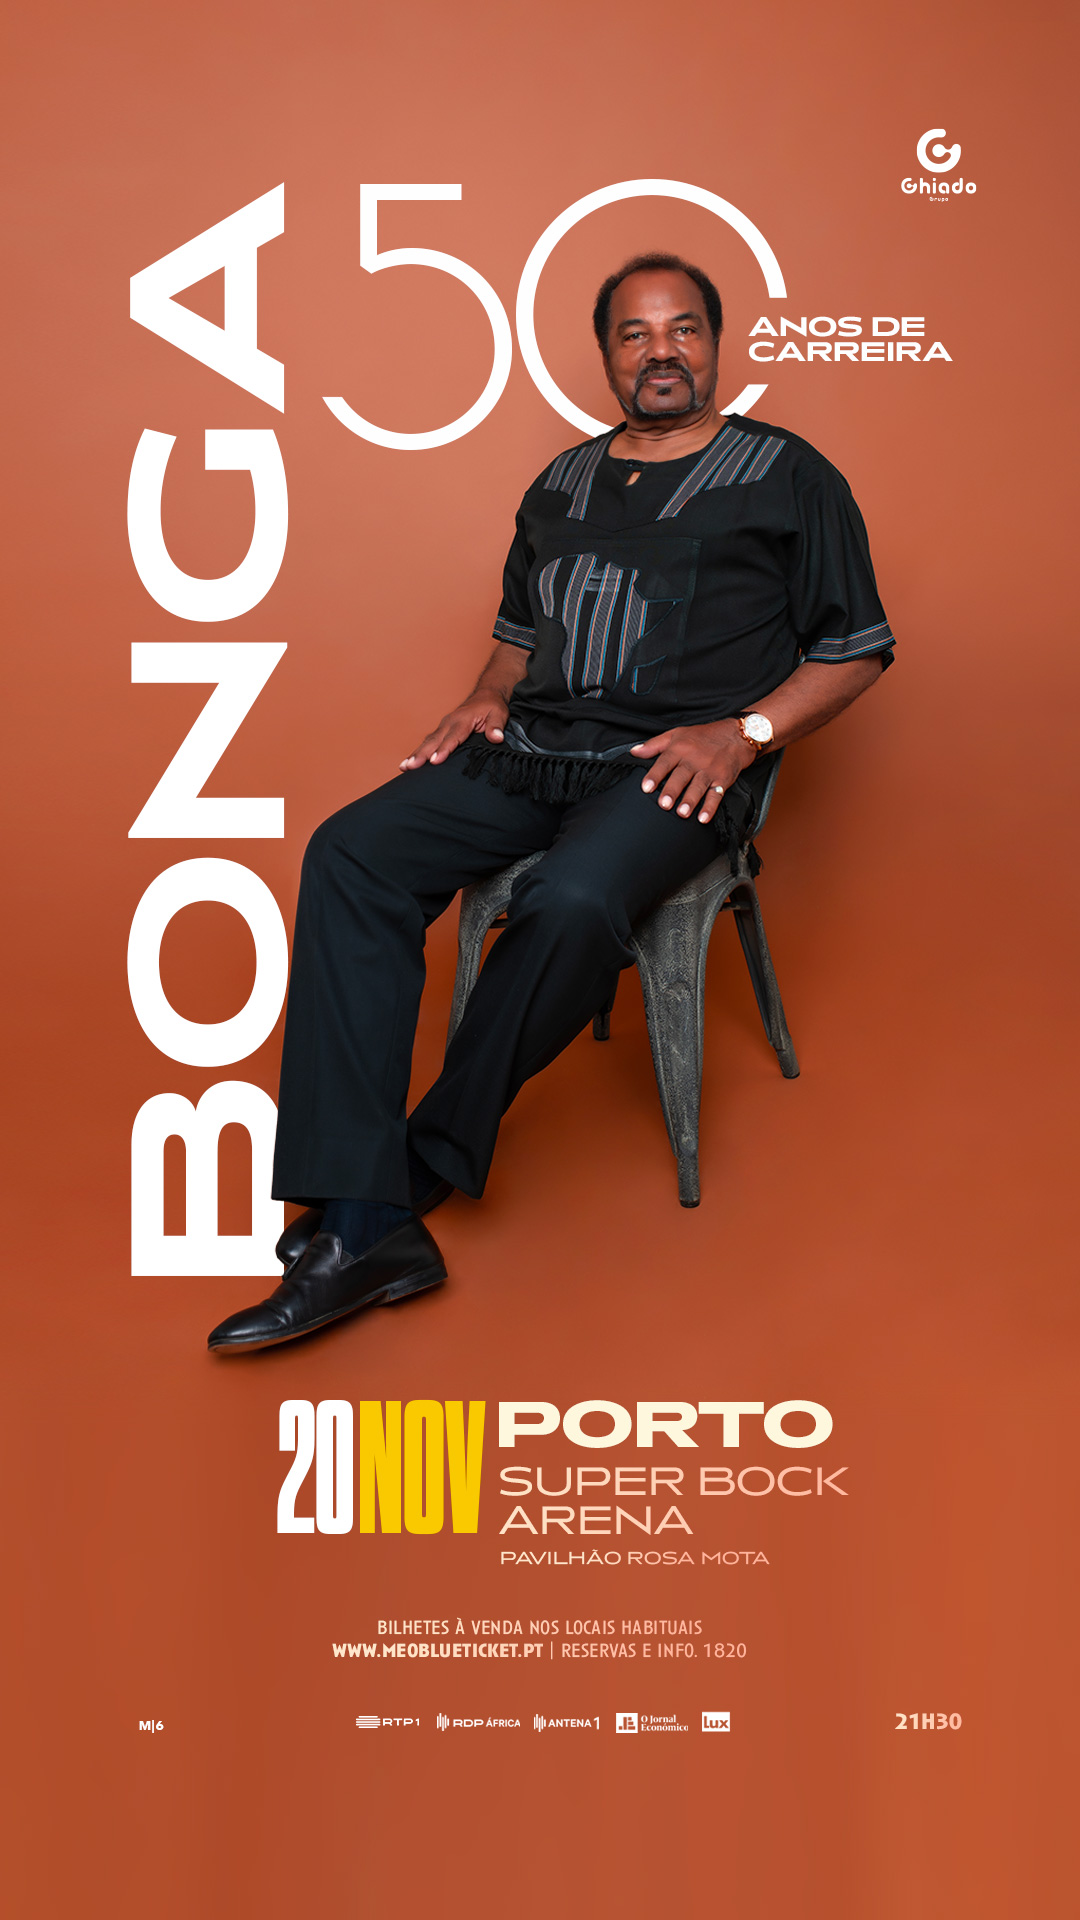 Bonga – 50 years of career